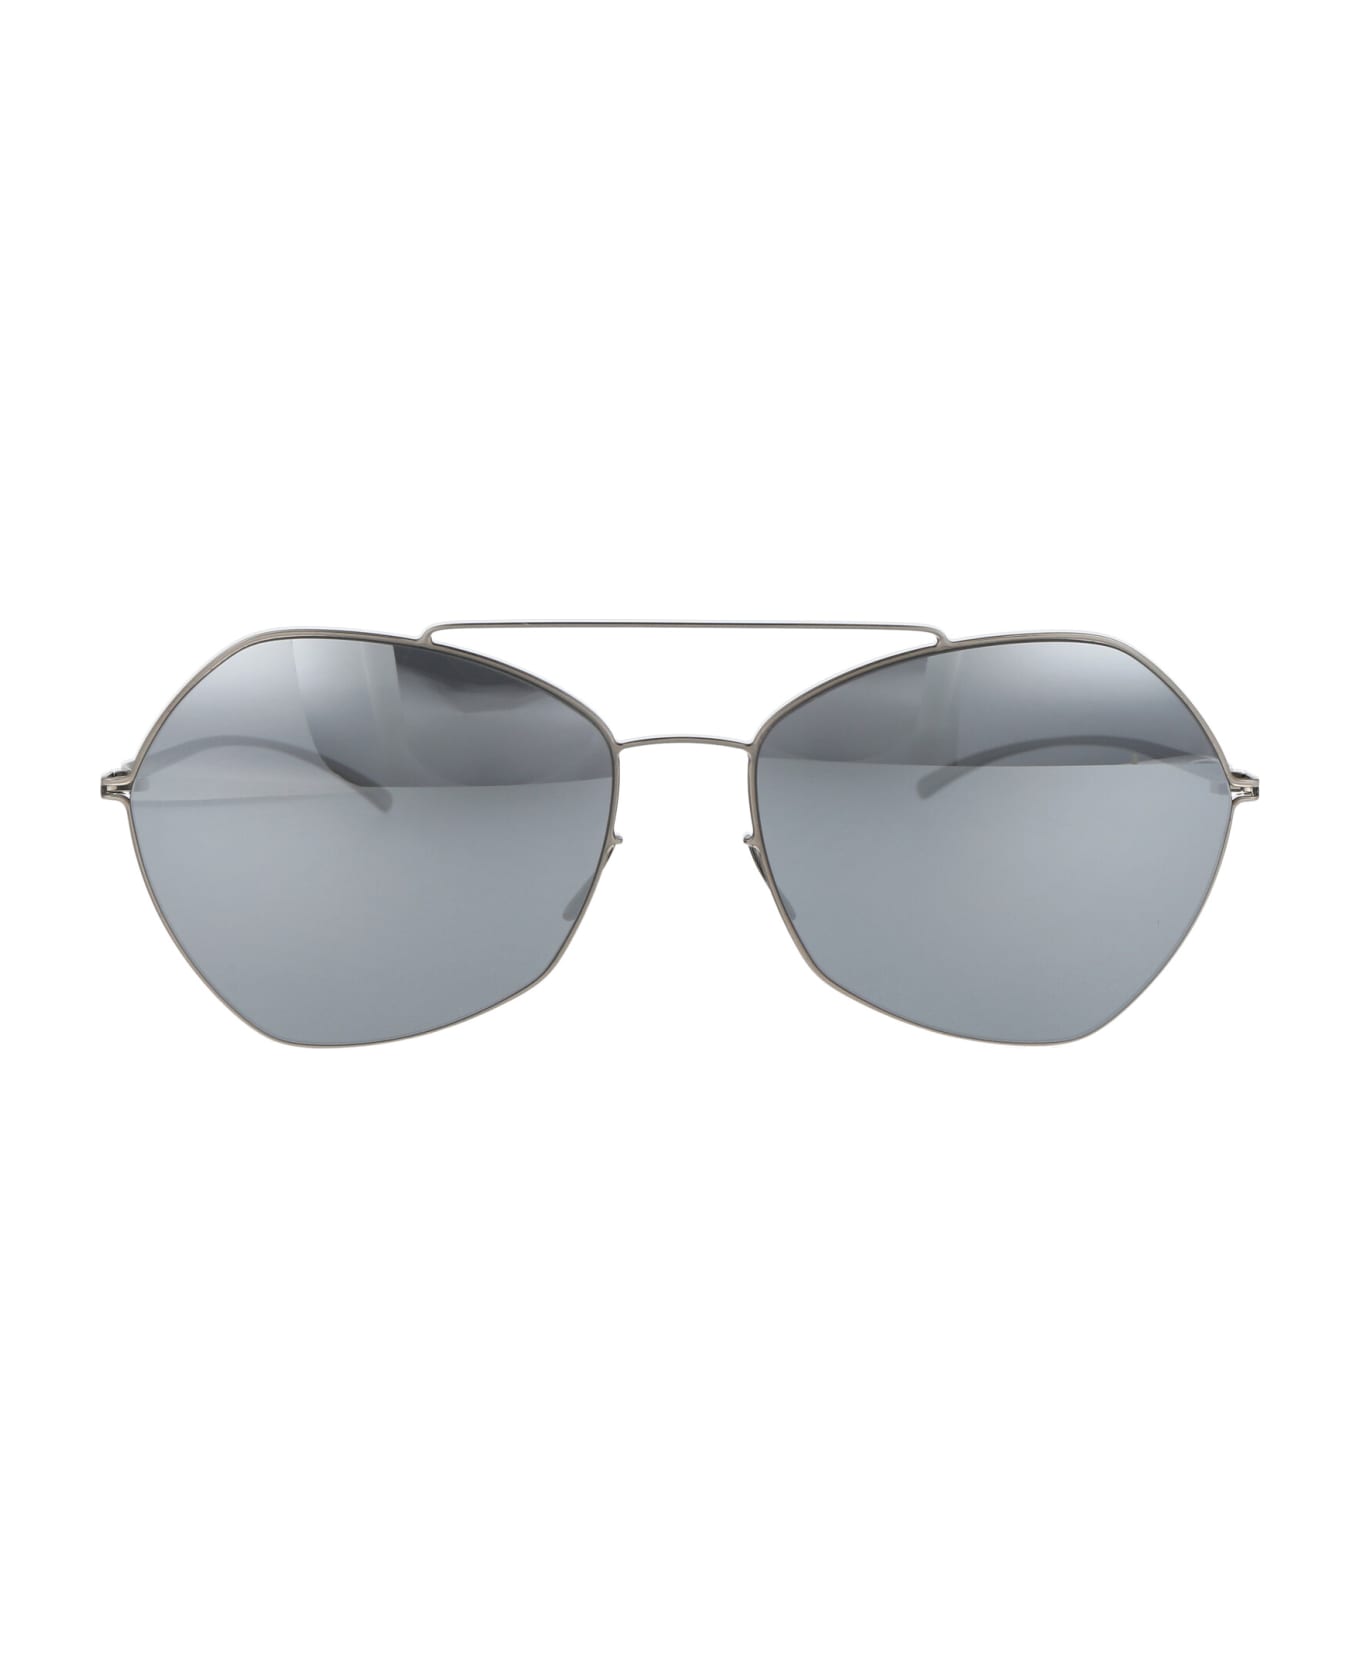 Mykita Mmesse012 Sunglasses - 187 E1 Silver Silver Flash